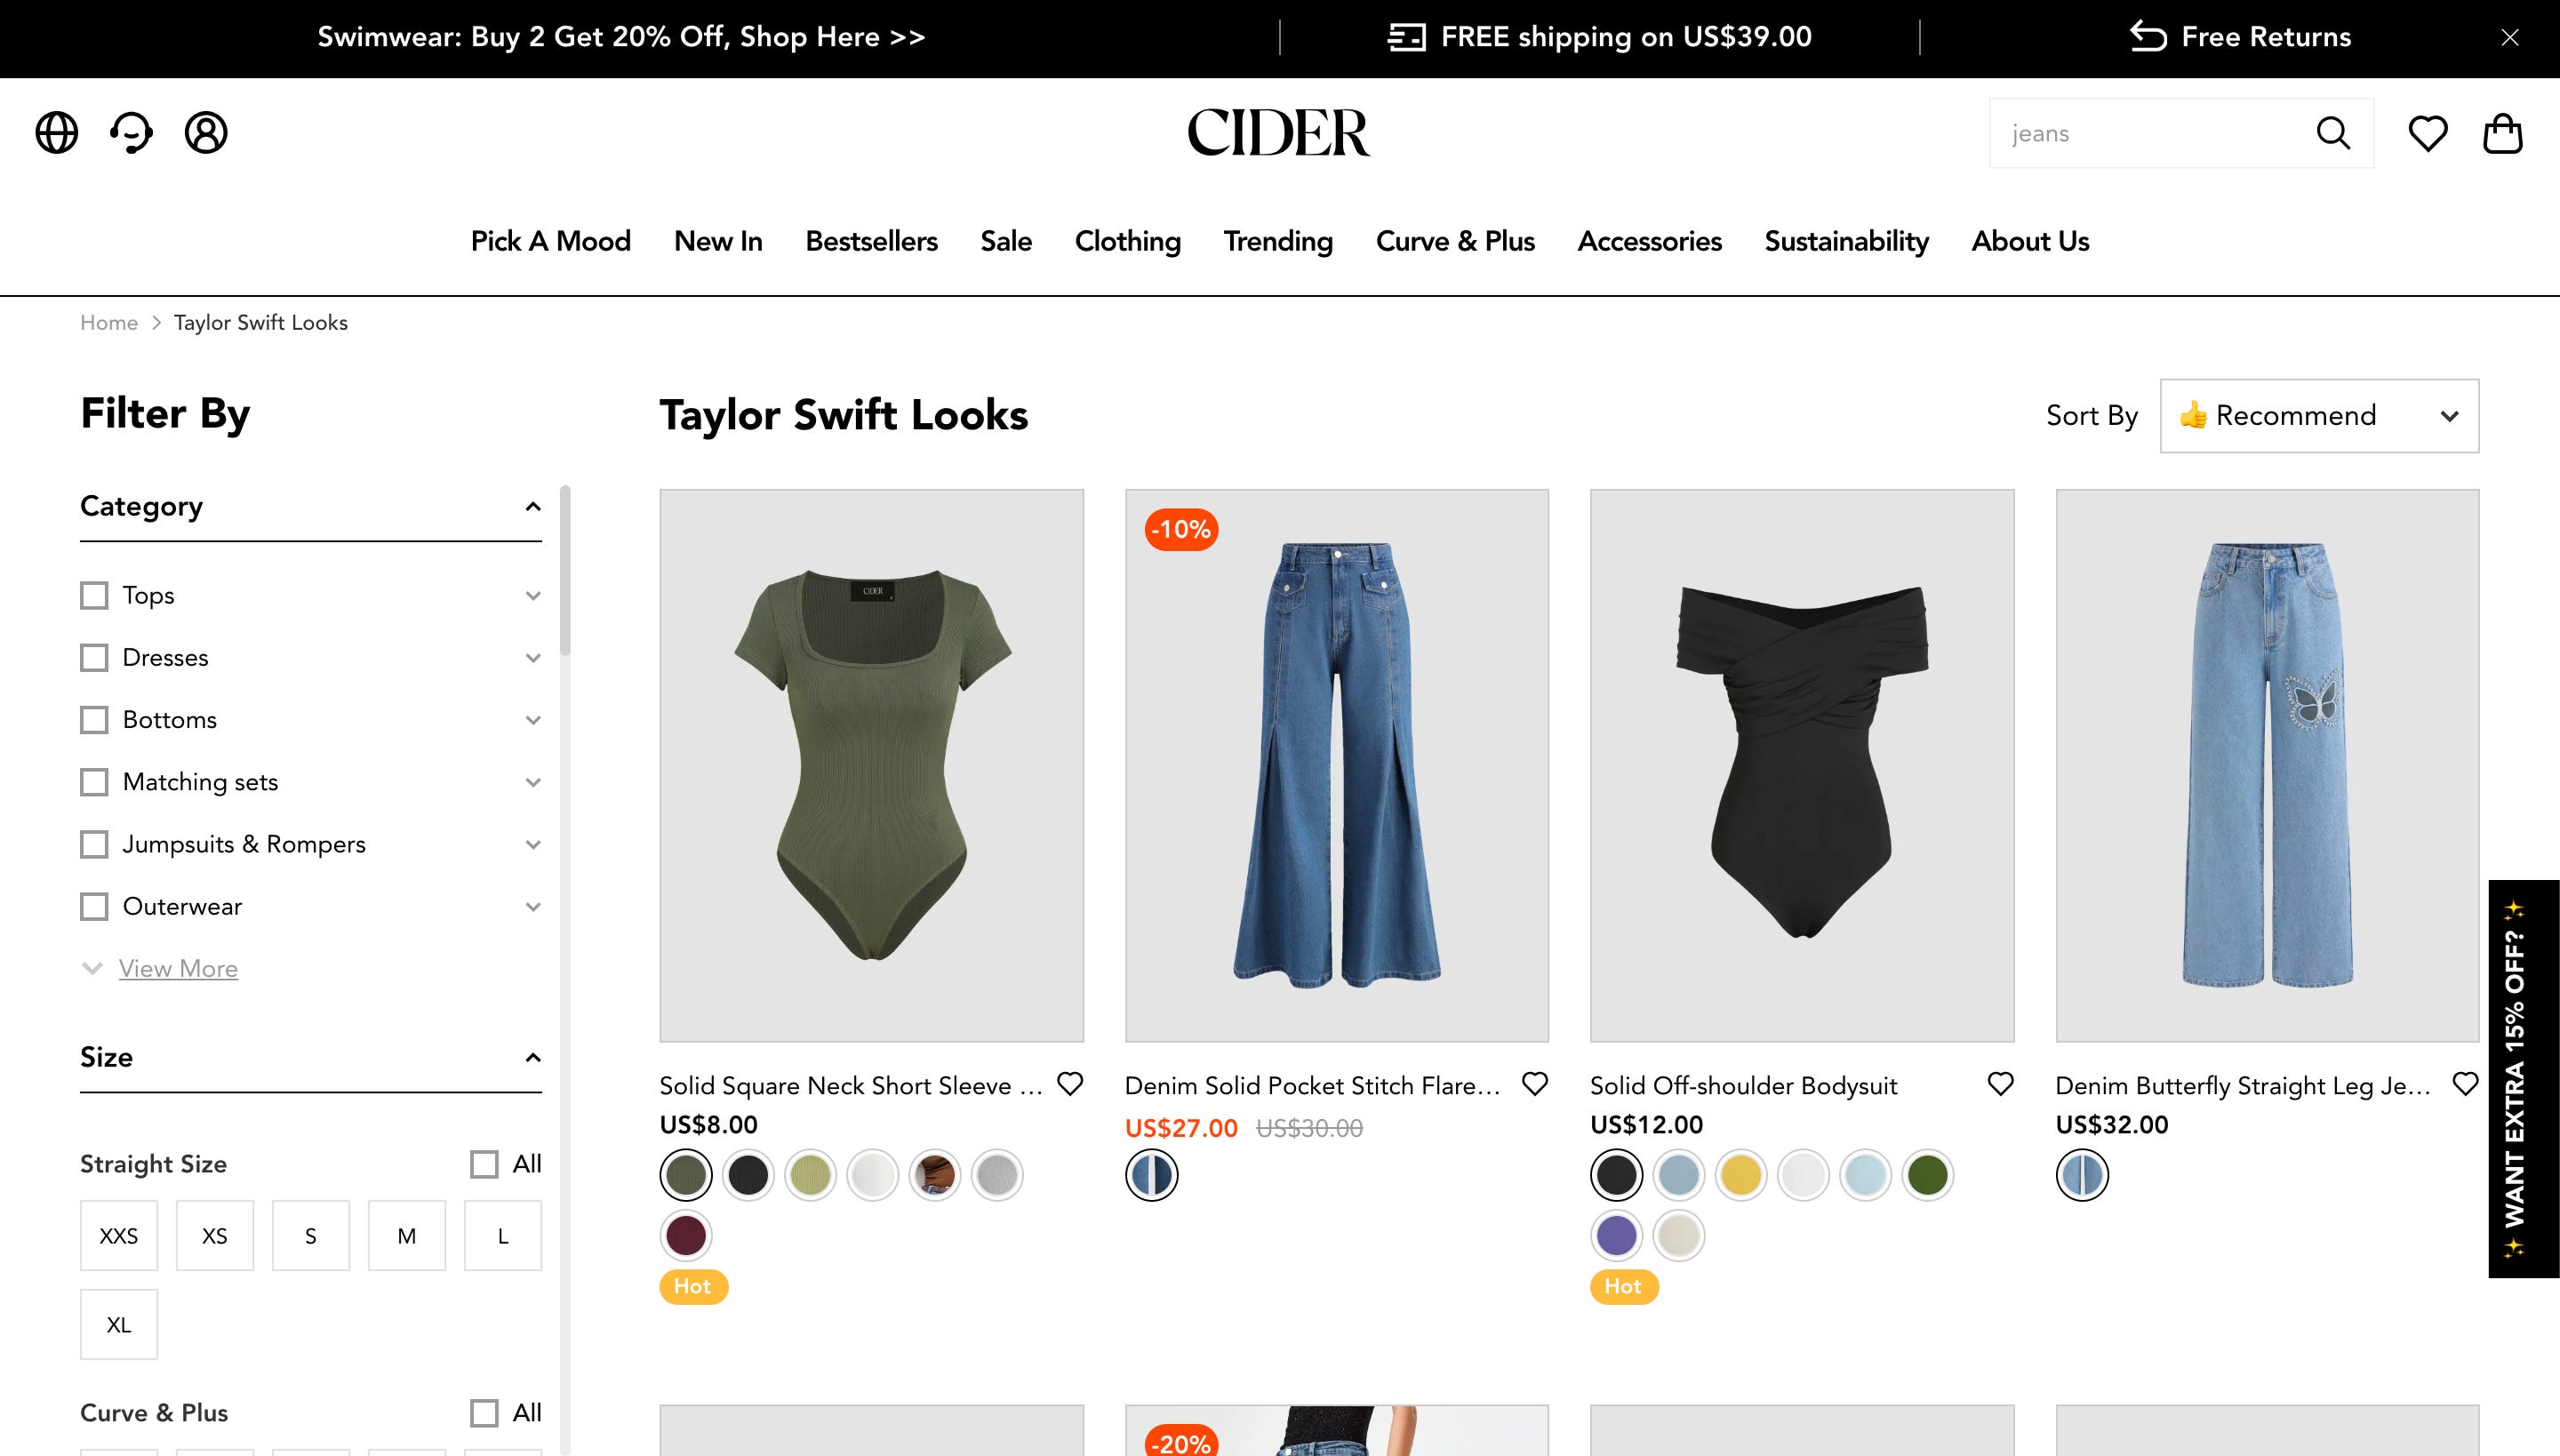 Die Cider-Website wirbt für von Taylor Swift inspirierte Kleidung.